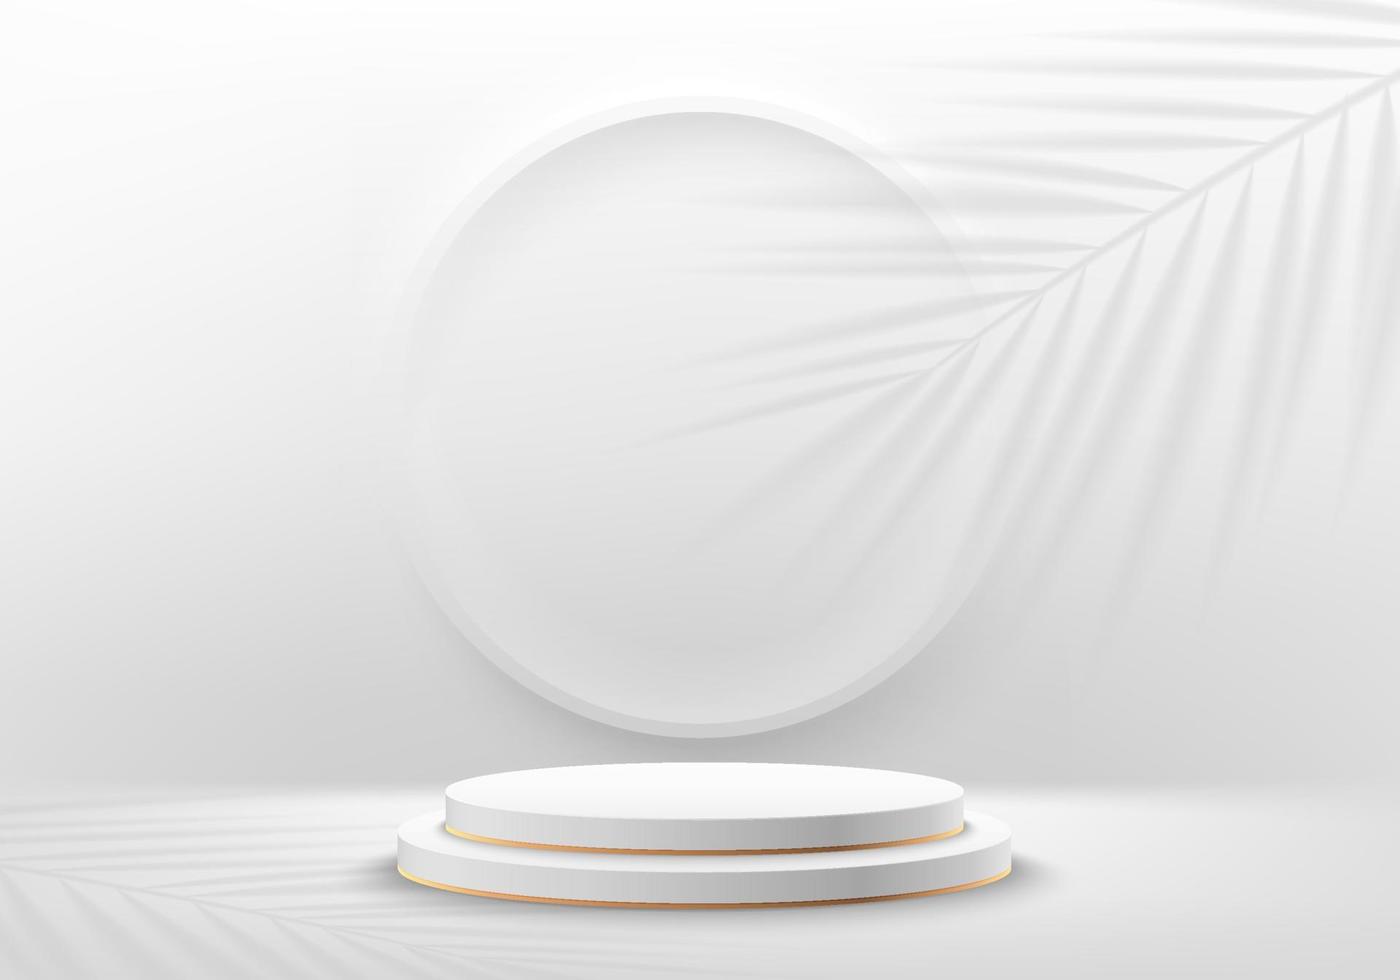 realistisch 3d wit cilindervoetstukpodium met cirkelscène en palmbladschaduwoverlay-achtergrond. abstracte minimale scène voor de showcase van het productpodium, promotievertoning. vector geometrische vormen.